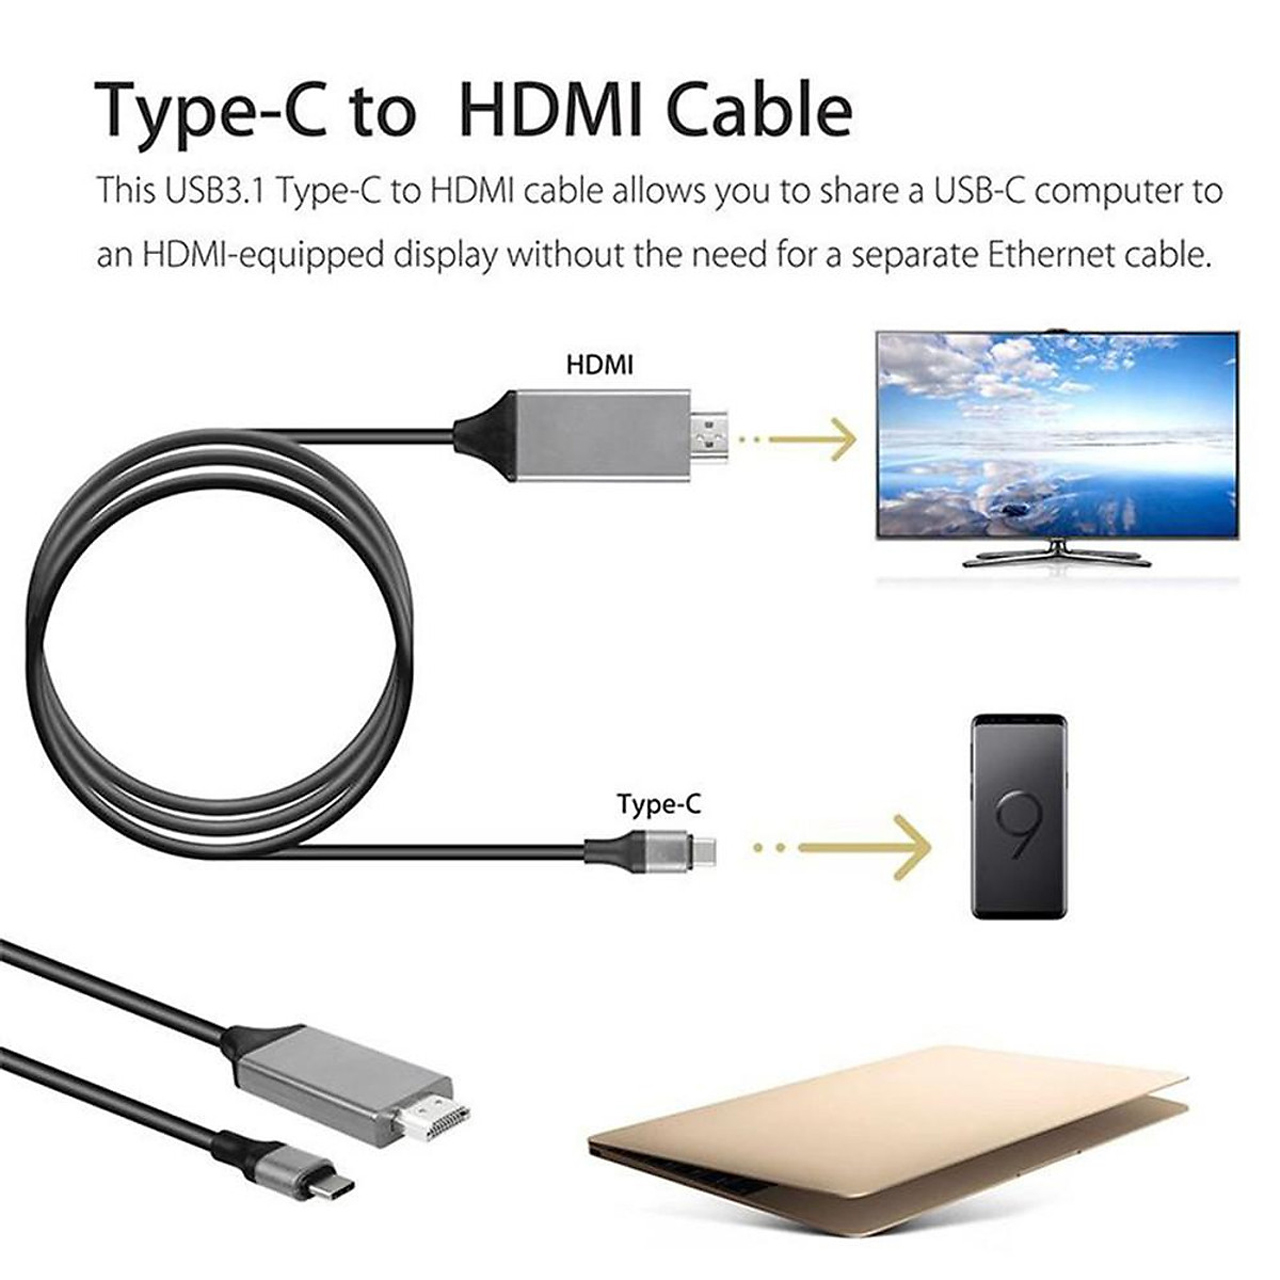 Dây Cáp Chuyển Đổi USB Type-C To HDMI 4K 60Hz Dài 1.8M - Thiết Kế Cắm Và Chạy, Chất Liệu Siêu Bền, Dùng Cho Macbook/Mac Mini/Ipad Pro/Ipad Air/Ipad Mini/Surface Laptop/Surface Pro/Surface Go/Surface Book/Laptop/Điện thoại – Hàng Chính Hãng